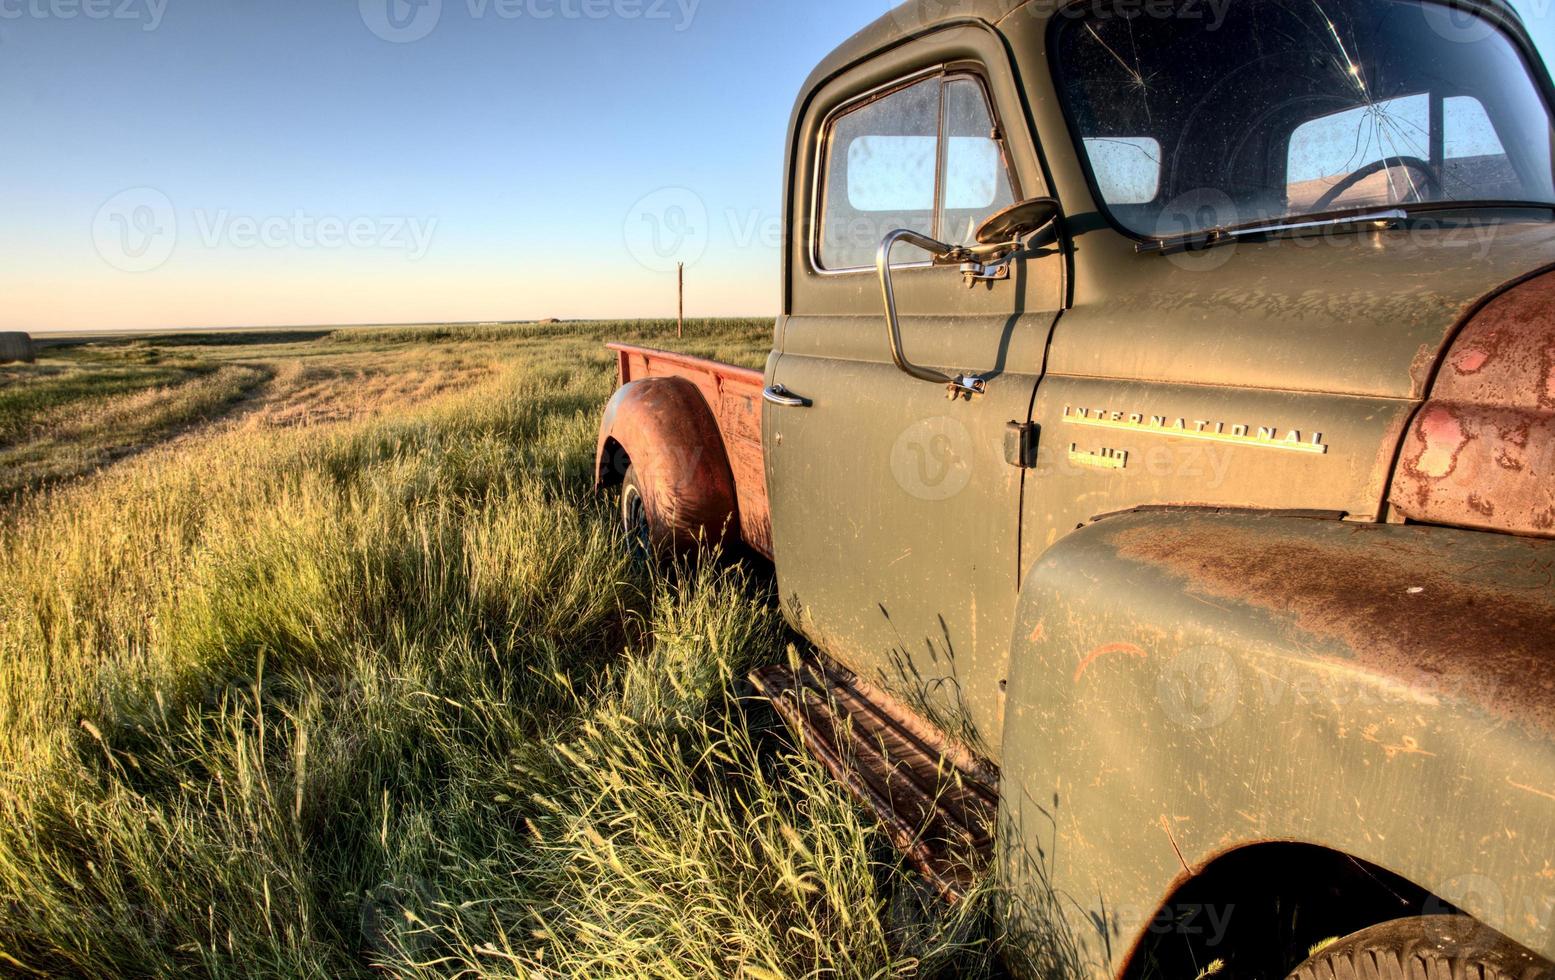 alte landwirtschaftliche Lastwagen foto